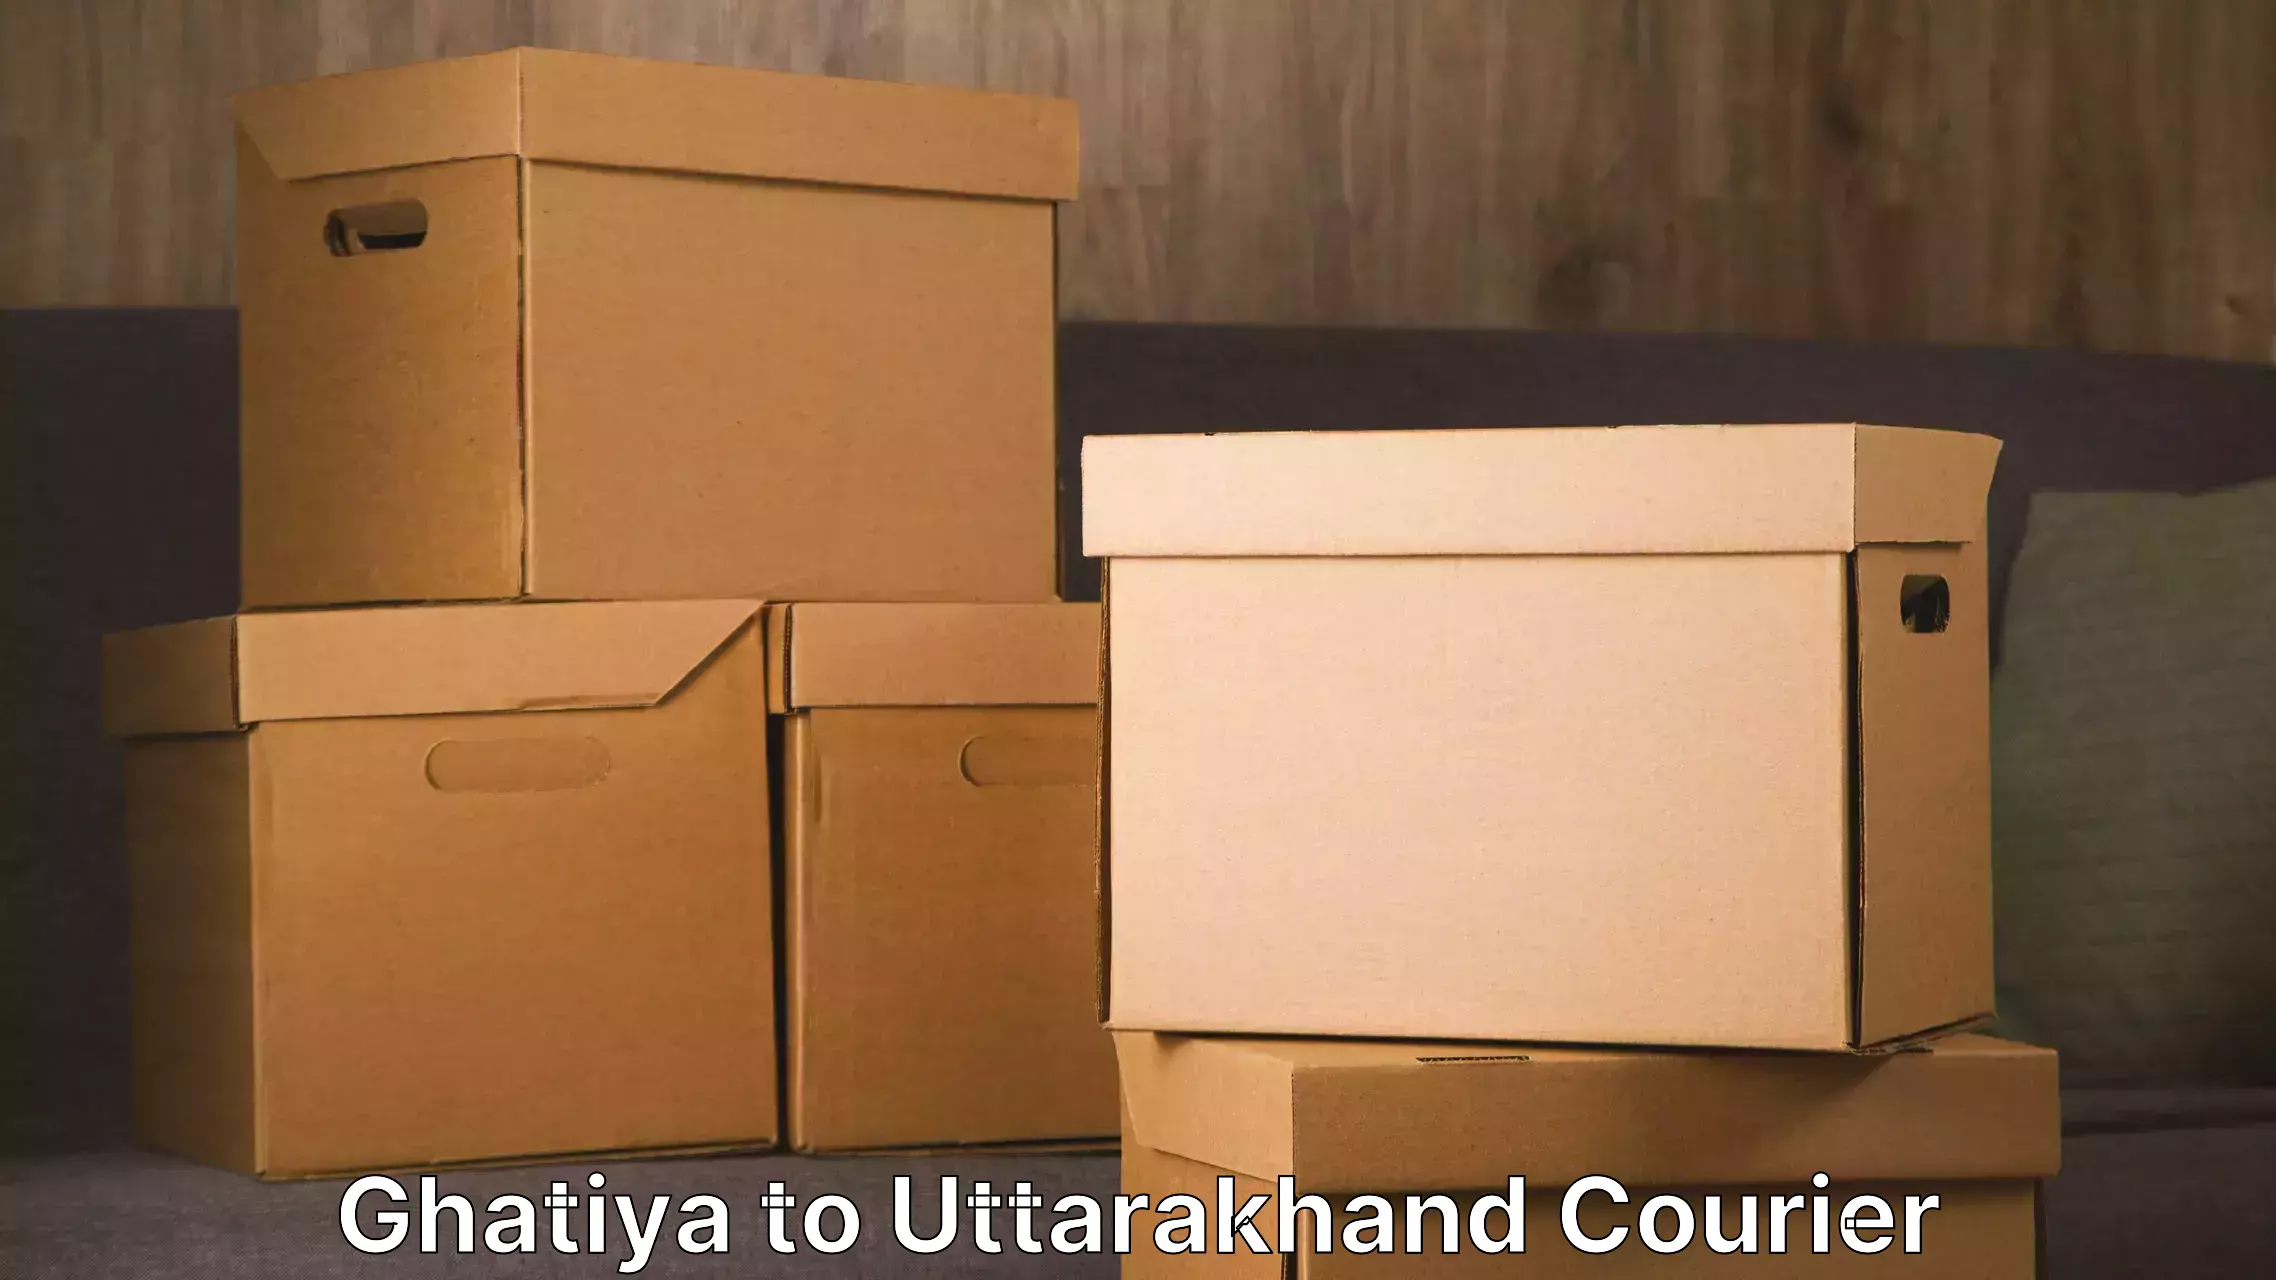 Moving and handling services Ghatiya to Kotdwara